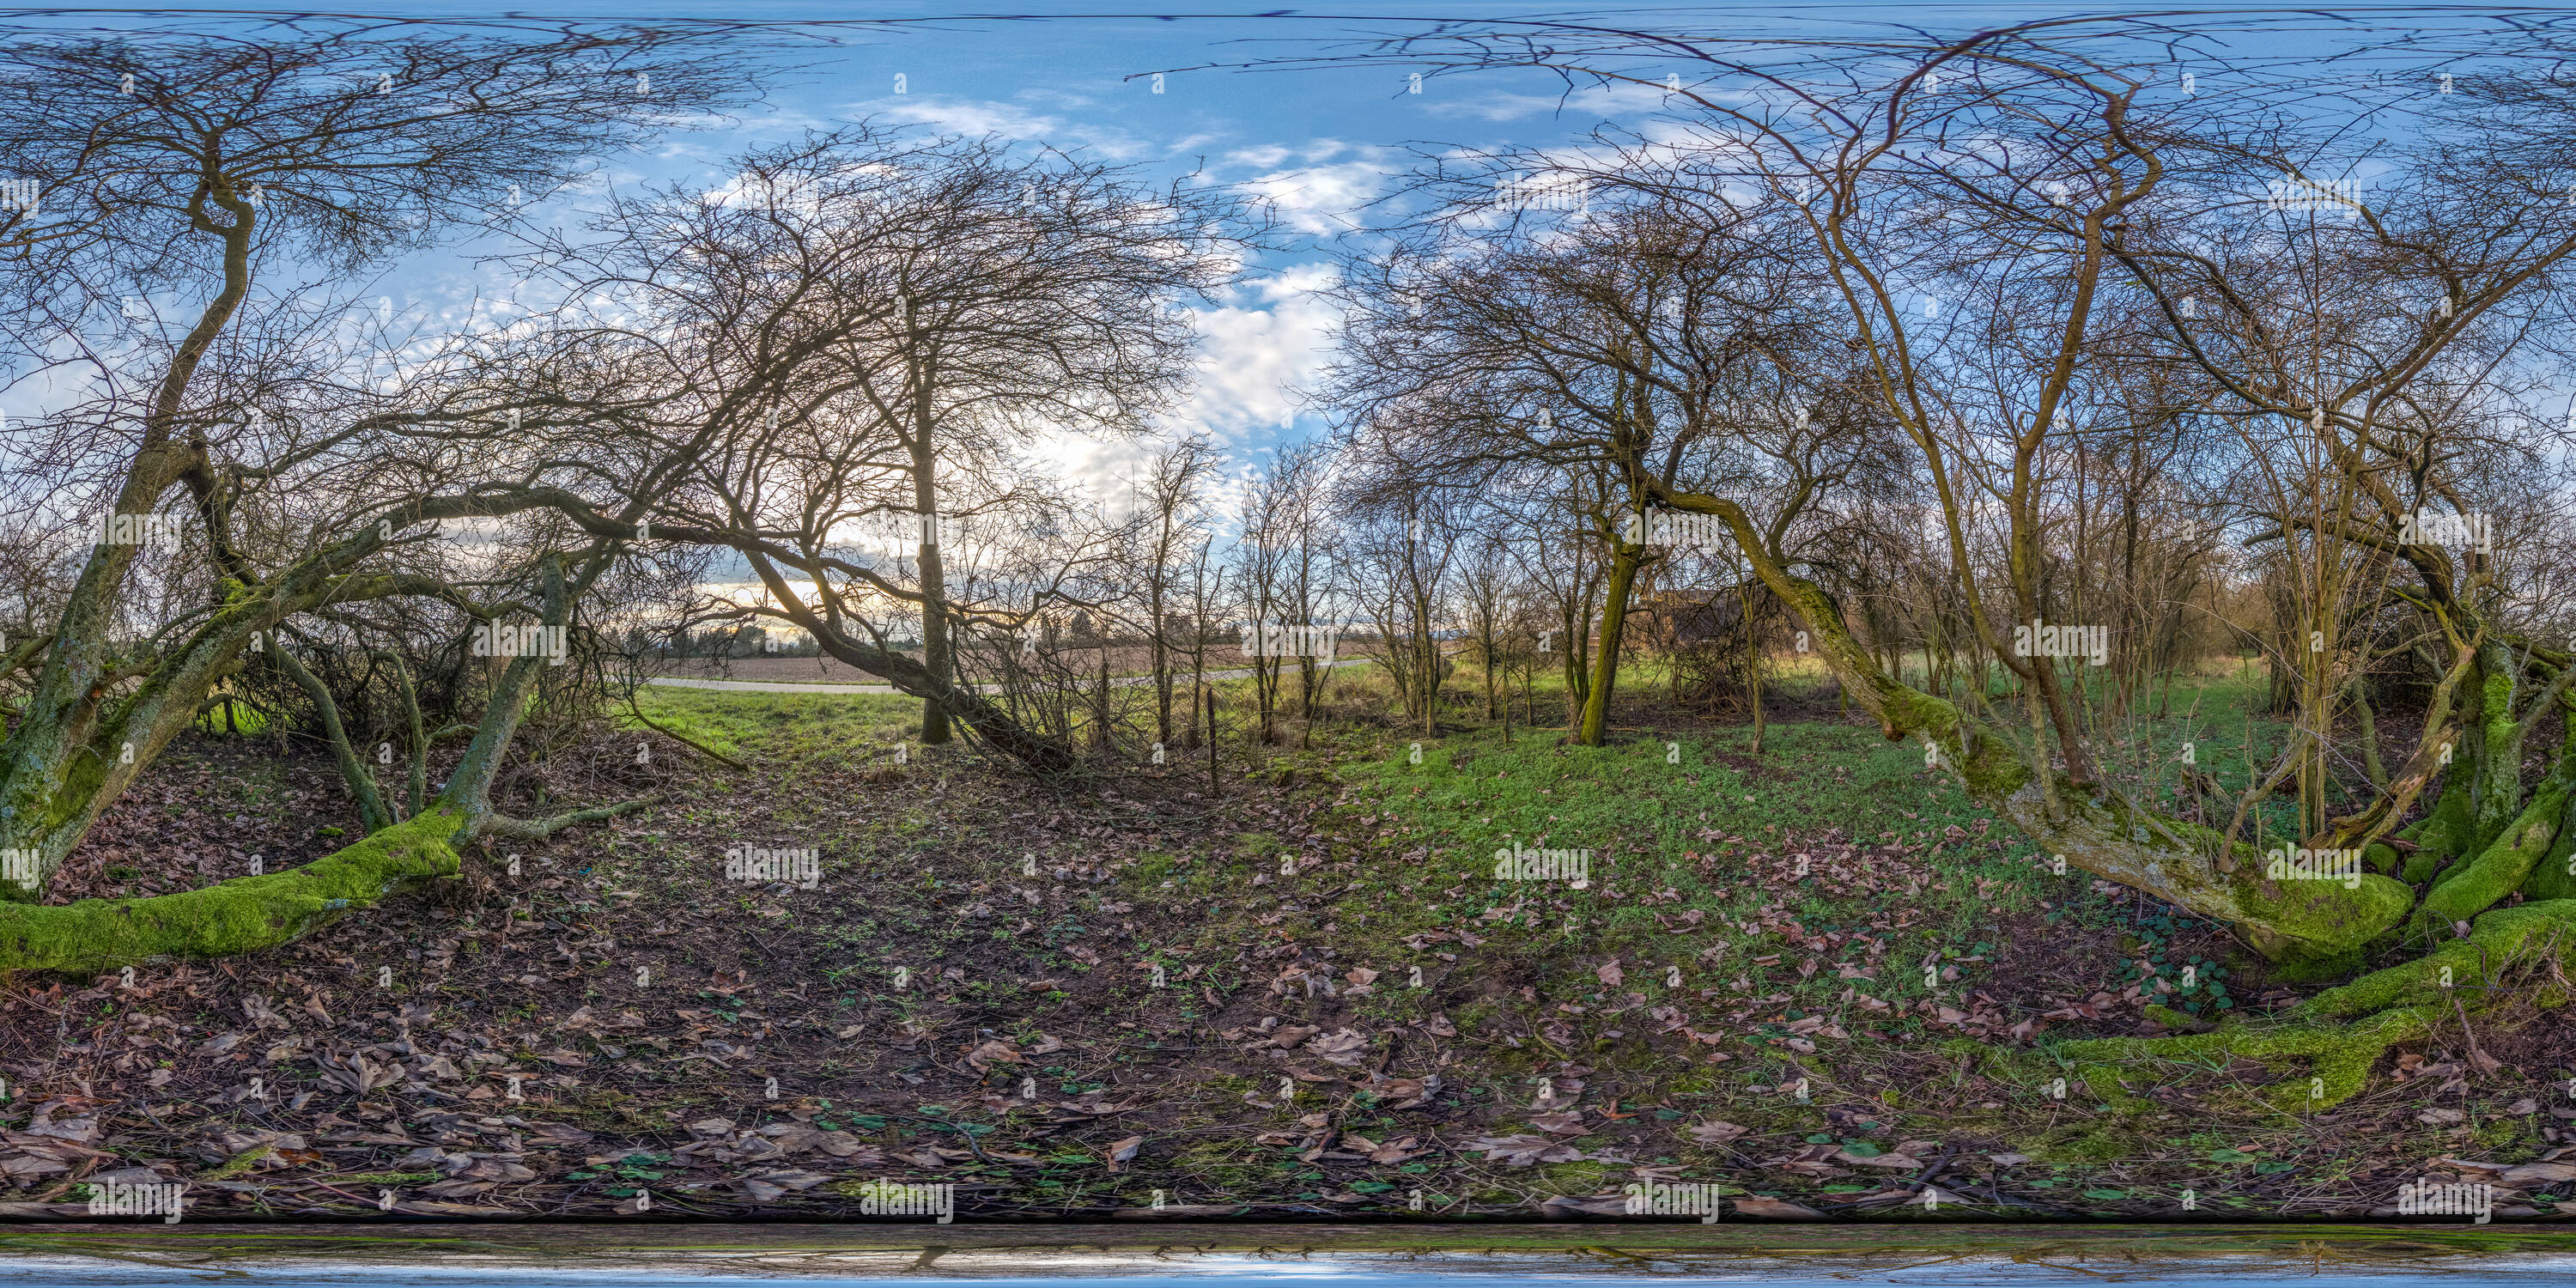 Visualizzazione panoramica a 360 gradi di NoTitlebecauseoflimitions da 360Cities